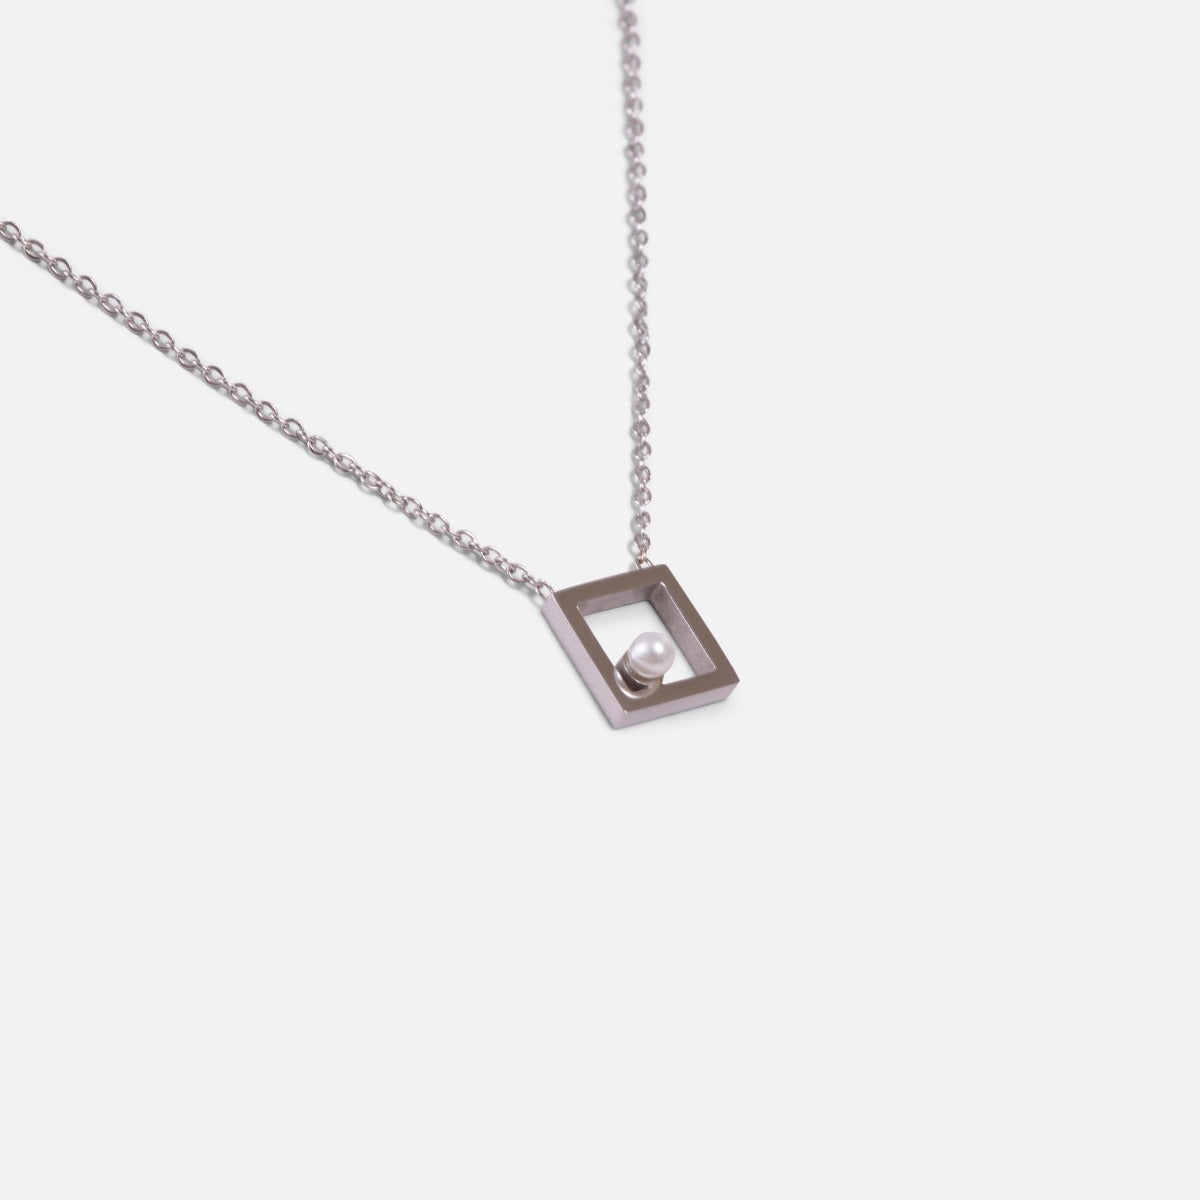 Collier acier inoxydable argenté avec carré ajouré et perle